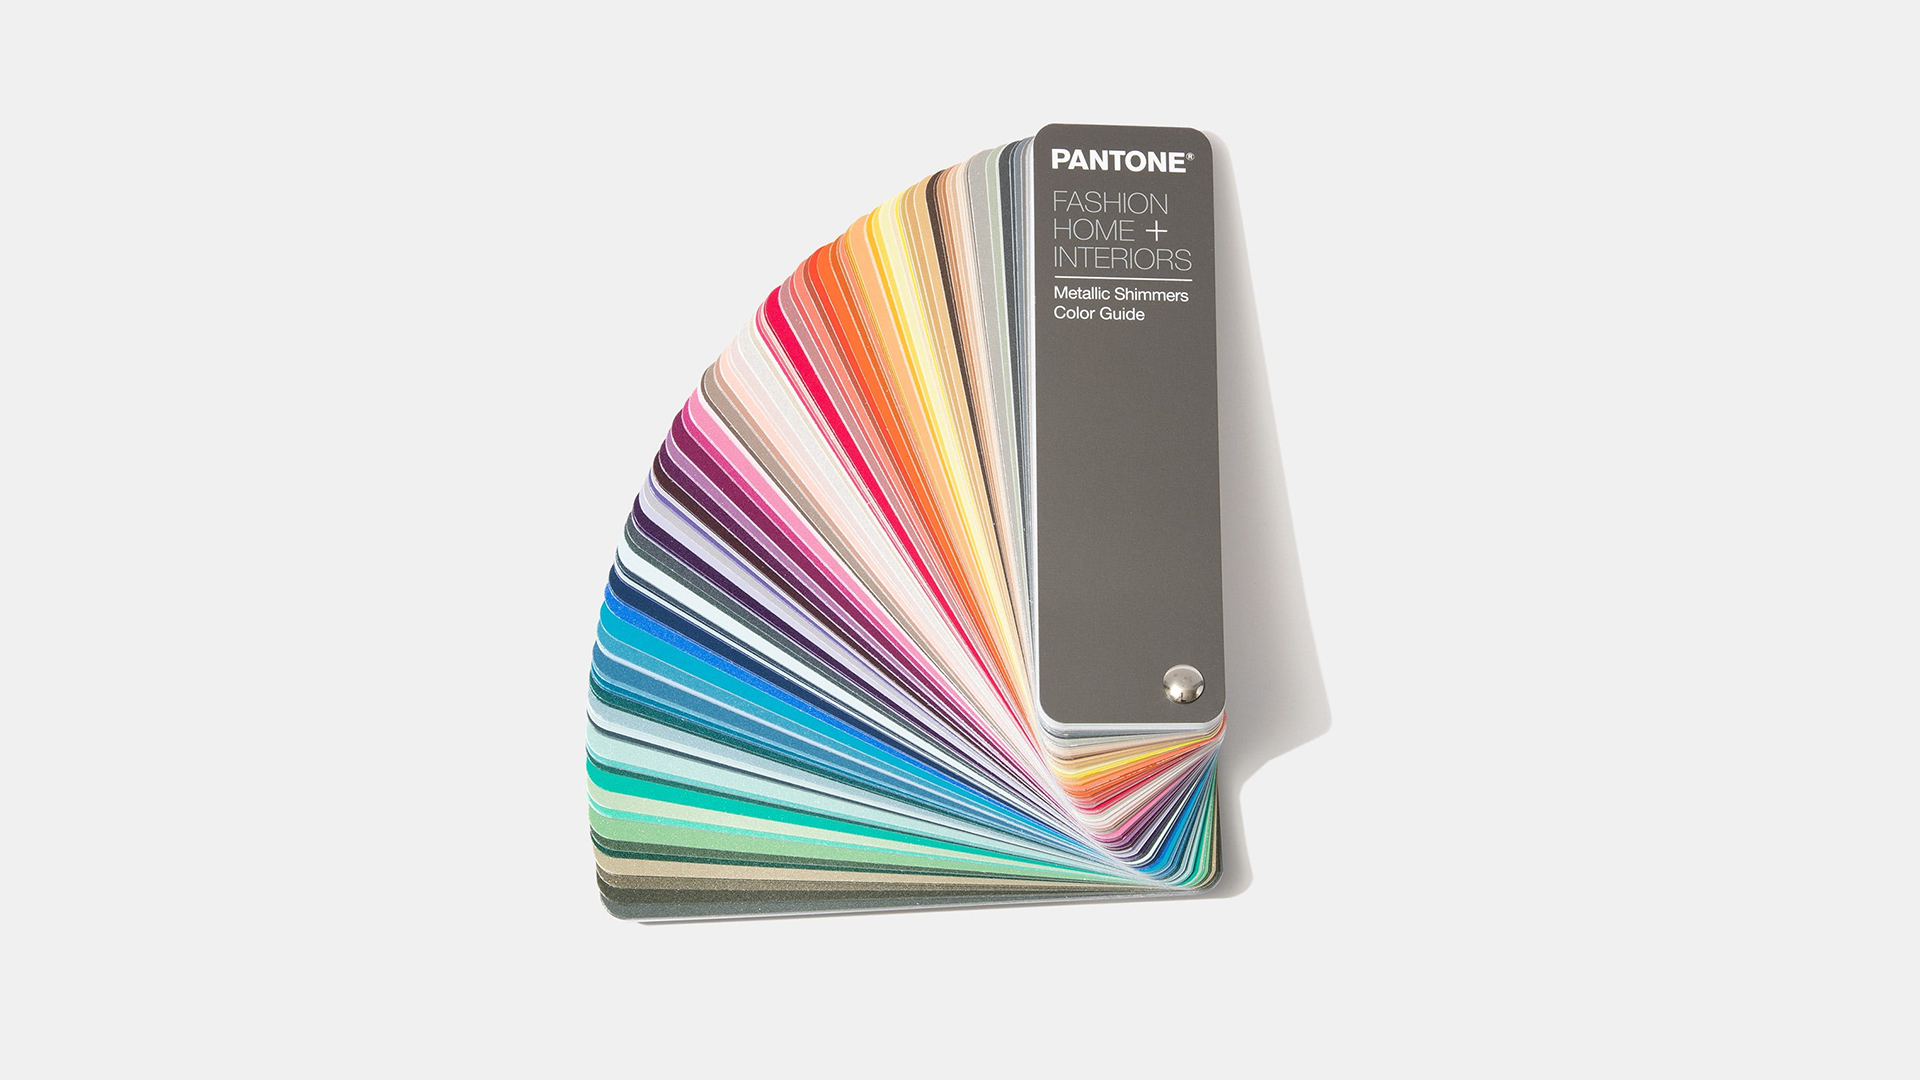 Controlul culorii / Pantone - PANTONE FHI Metallic Shimmers Color Guide, transilvae.ro